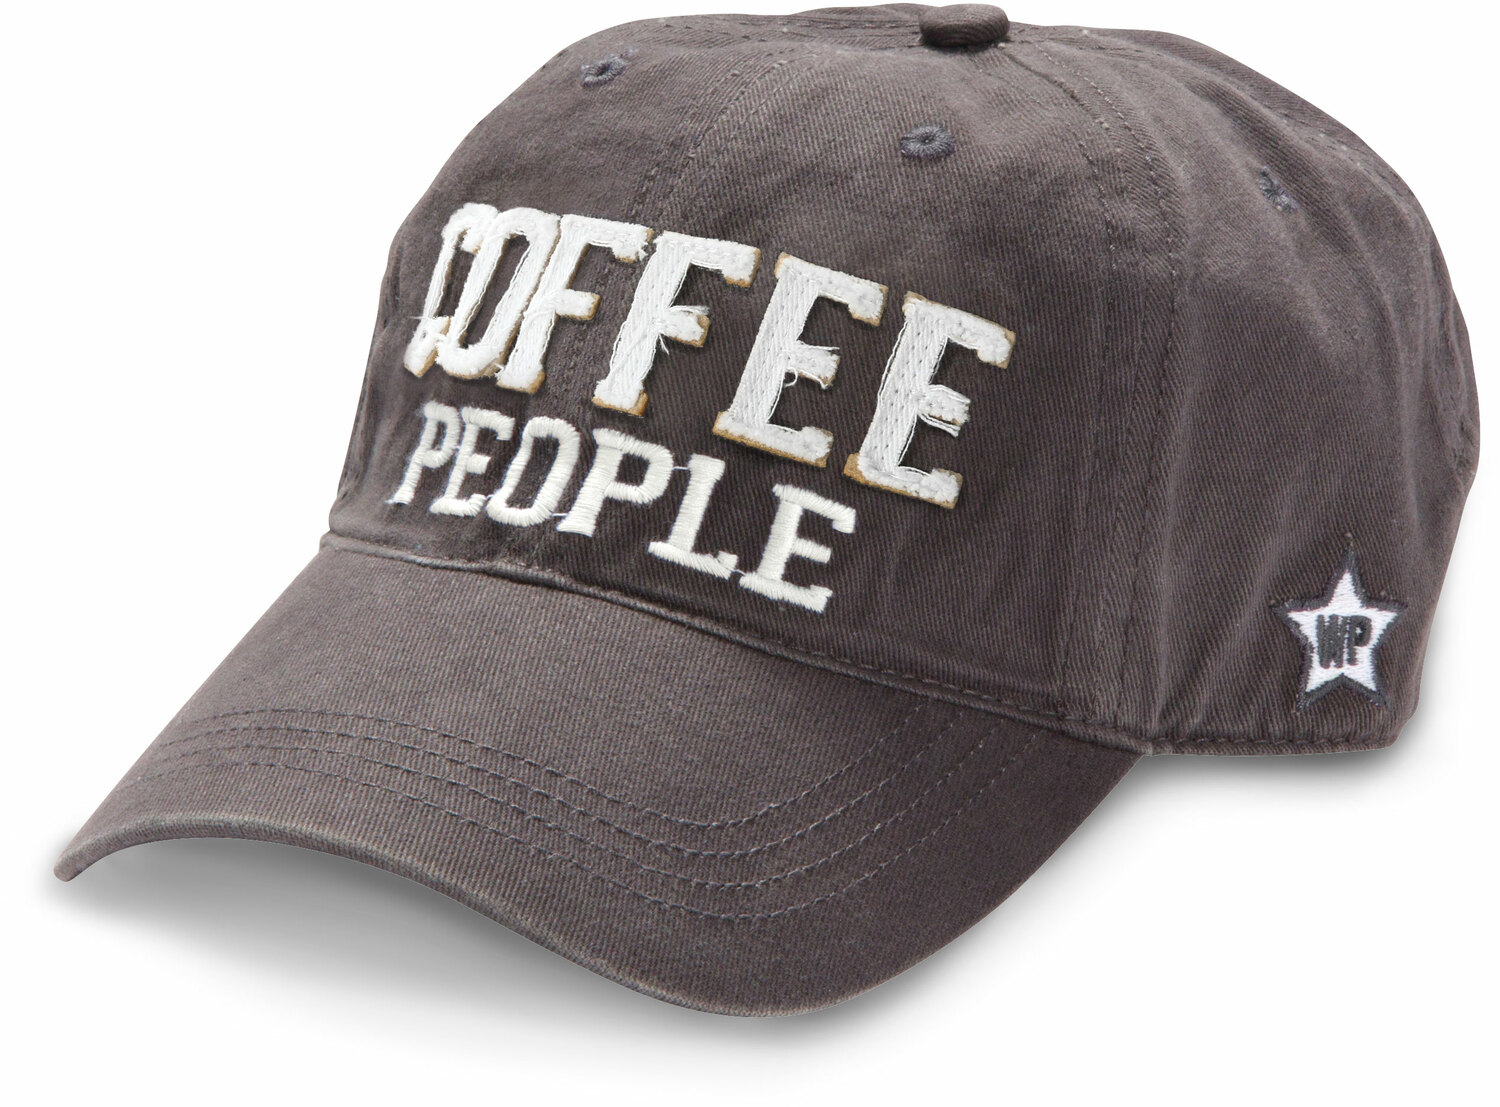 Coffee People by We People - Coffee People - Dark Gray Adjustable Hat